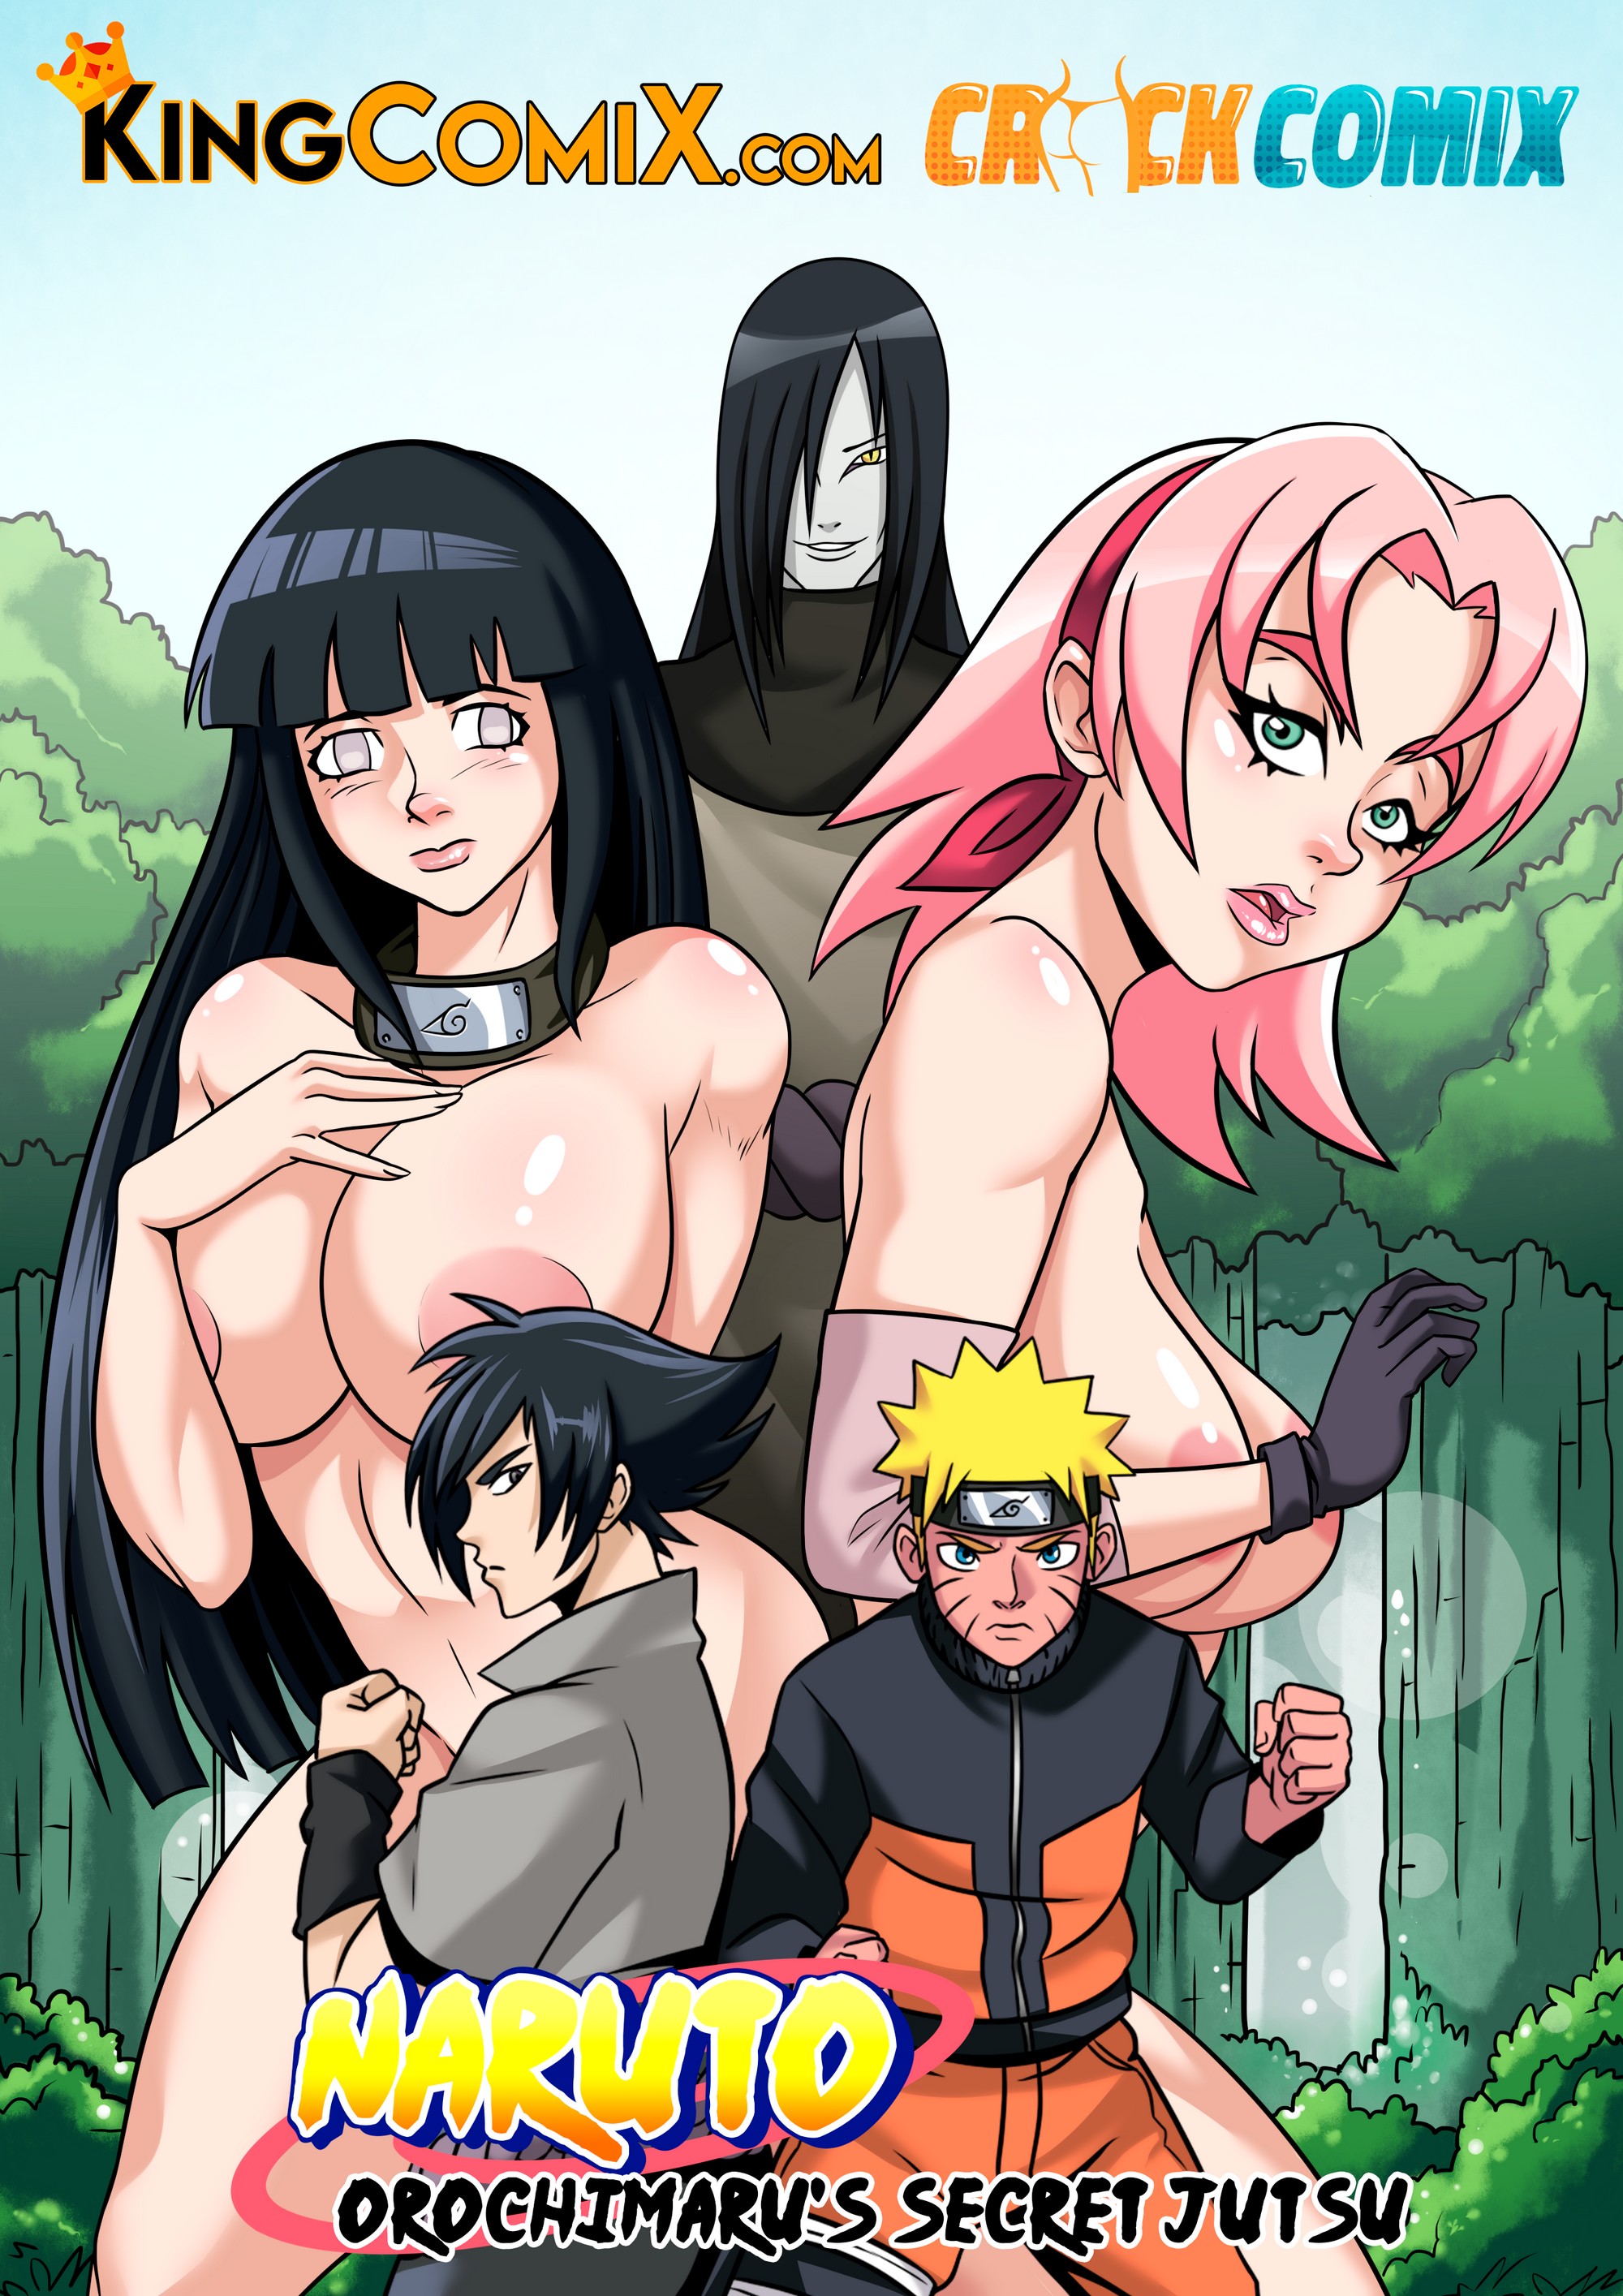 Naruto sex jutsu porn comic